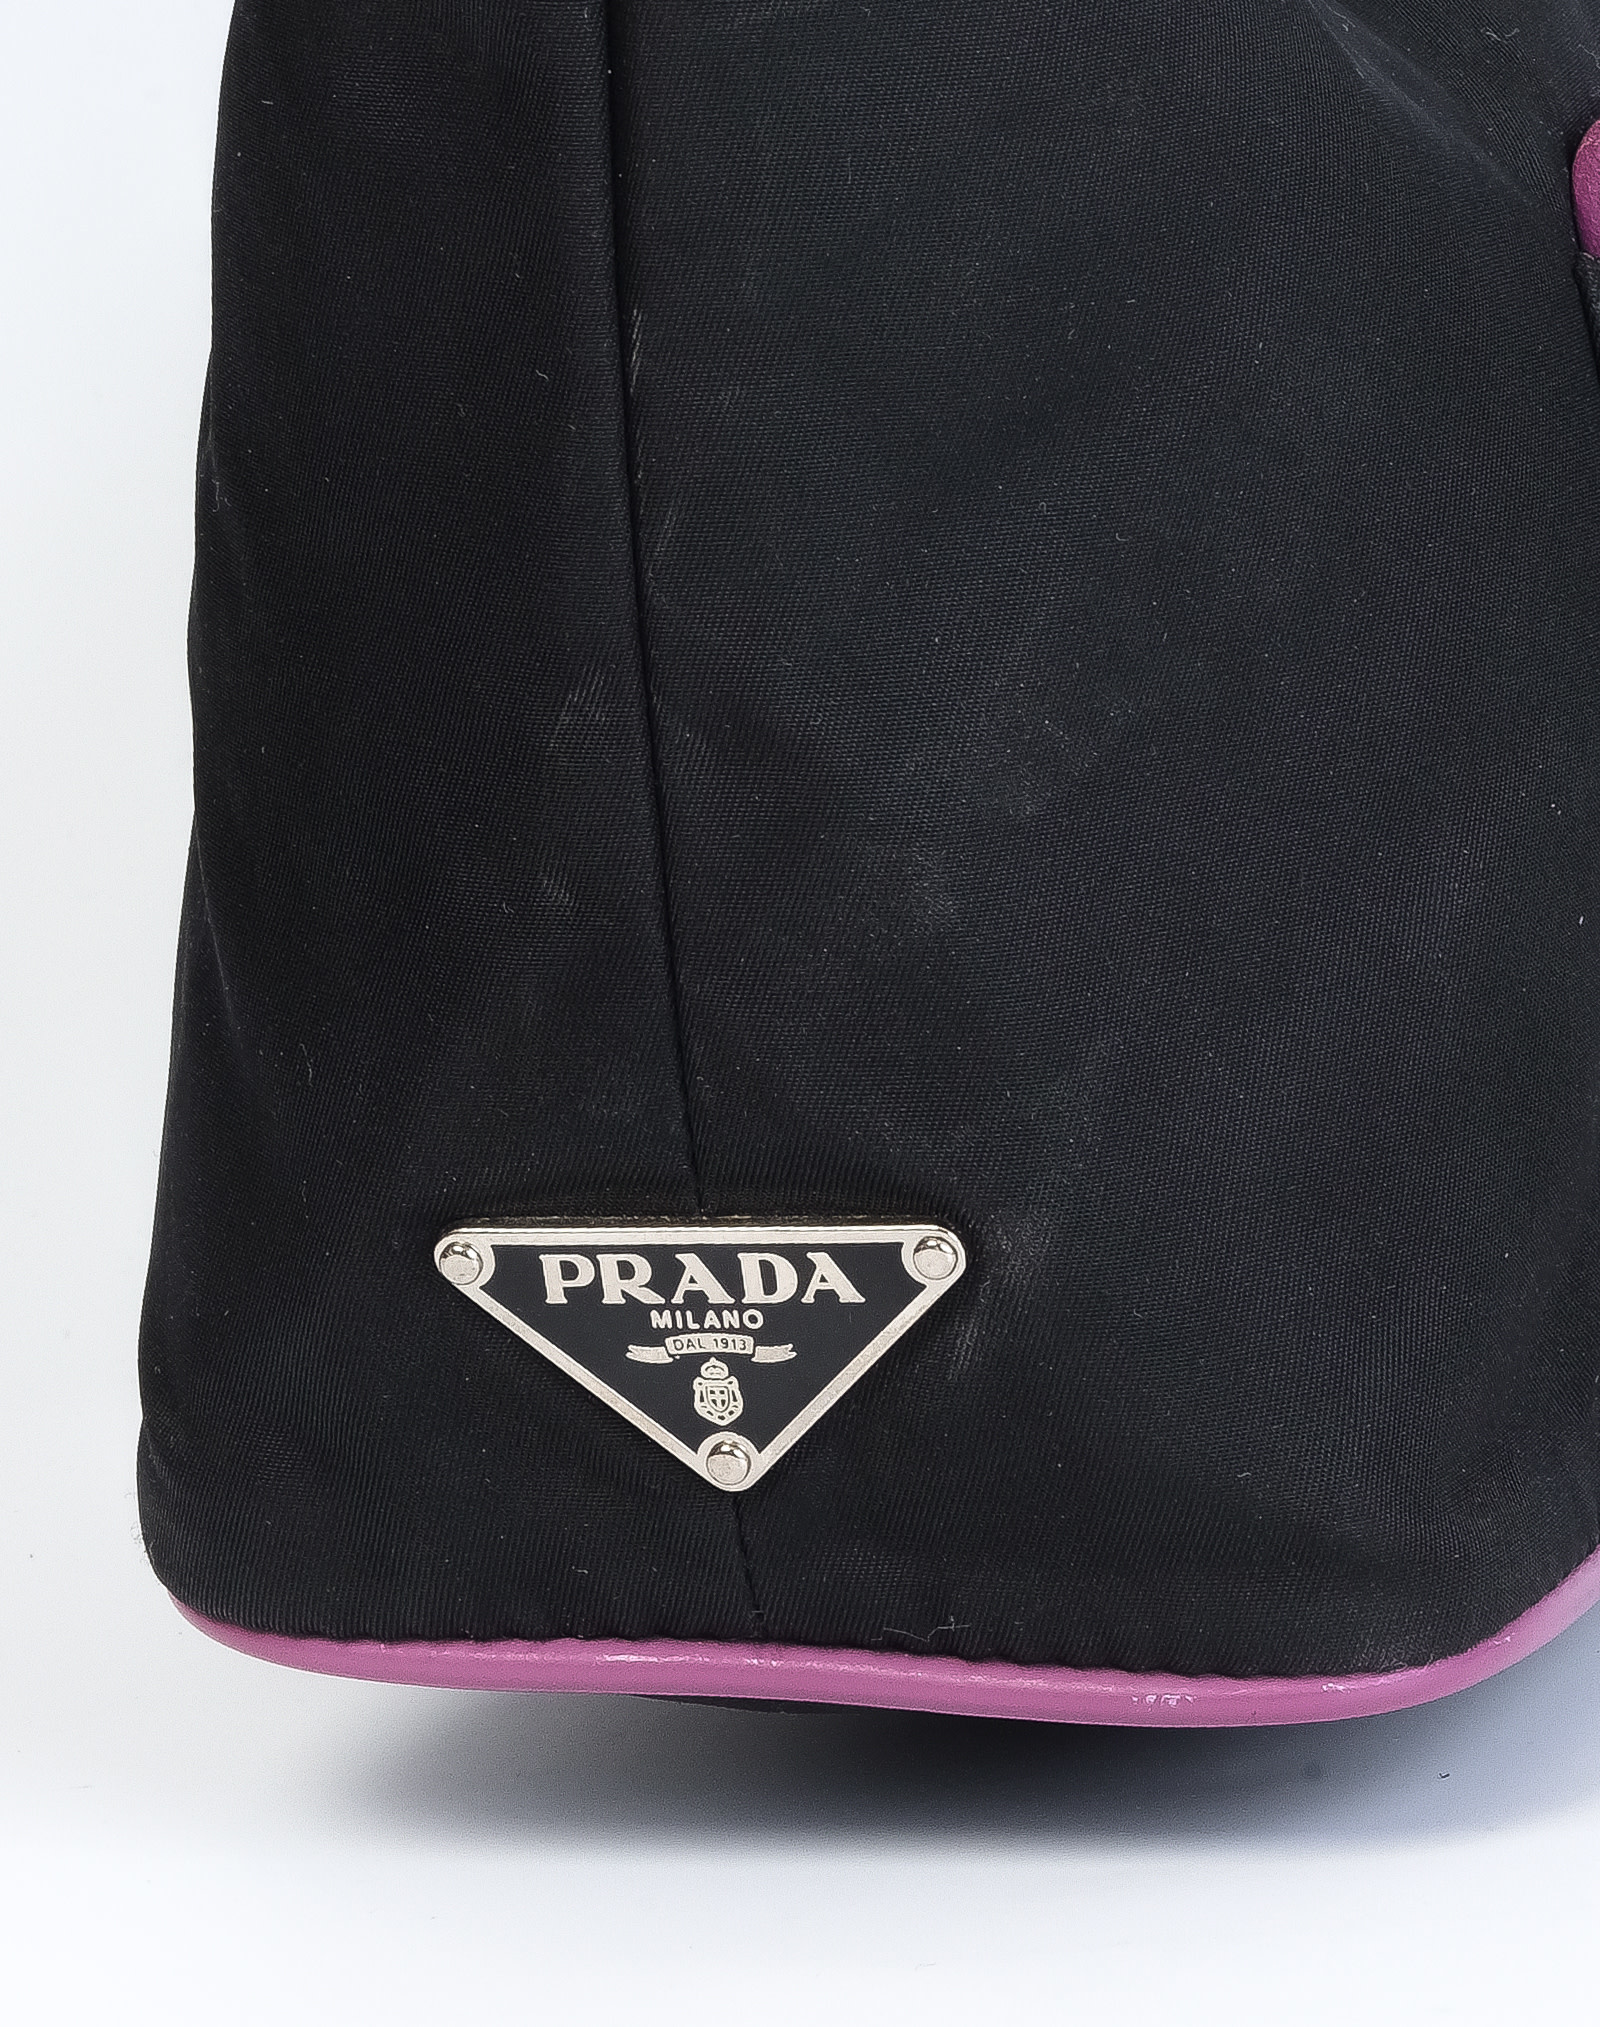 Prada Promenade – The Brand Collector